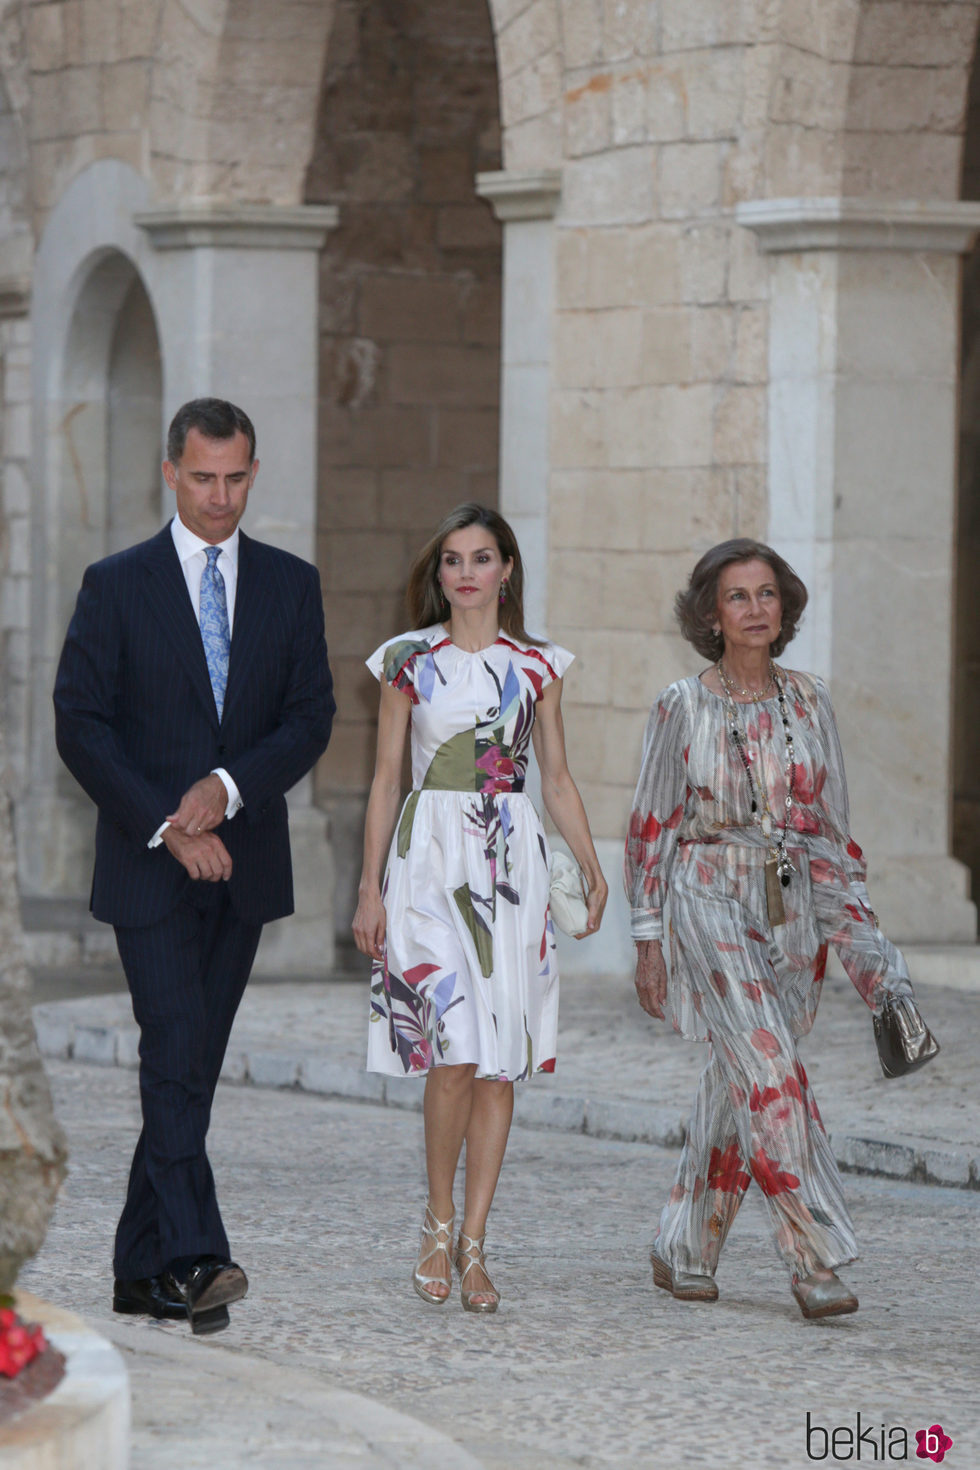 Los Reyes Felipe y Letizia y la Reina Sofía en la recepción a las autoridades de Mallorca